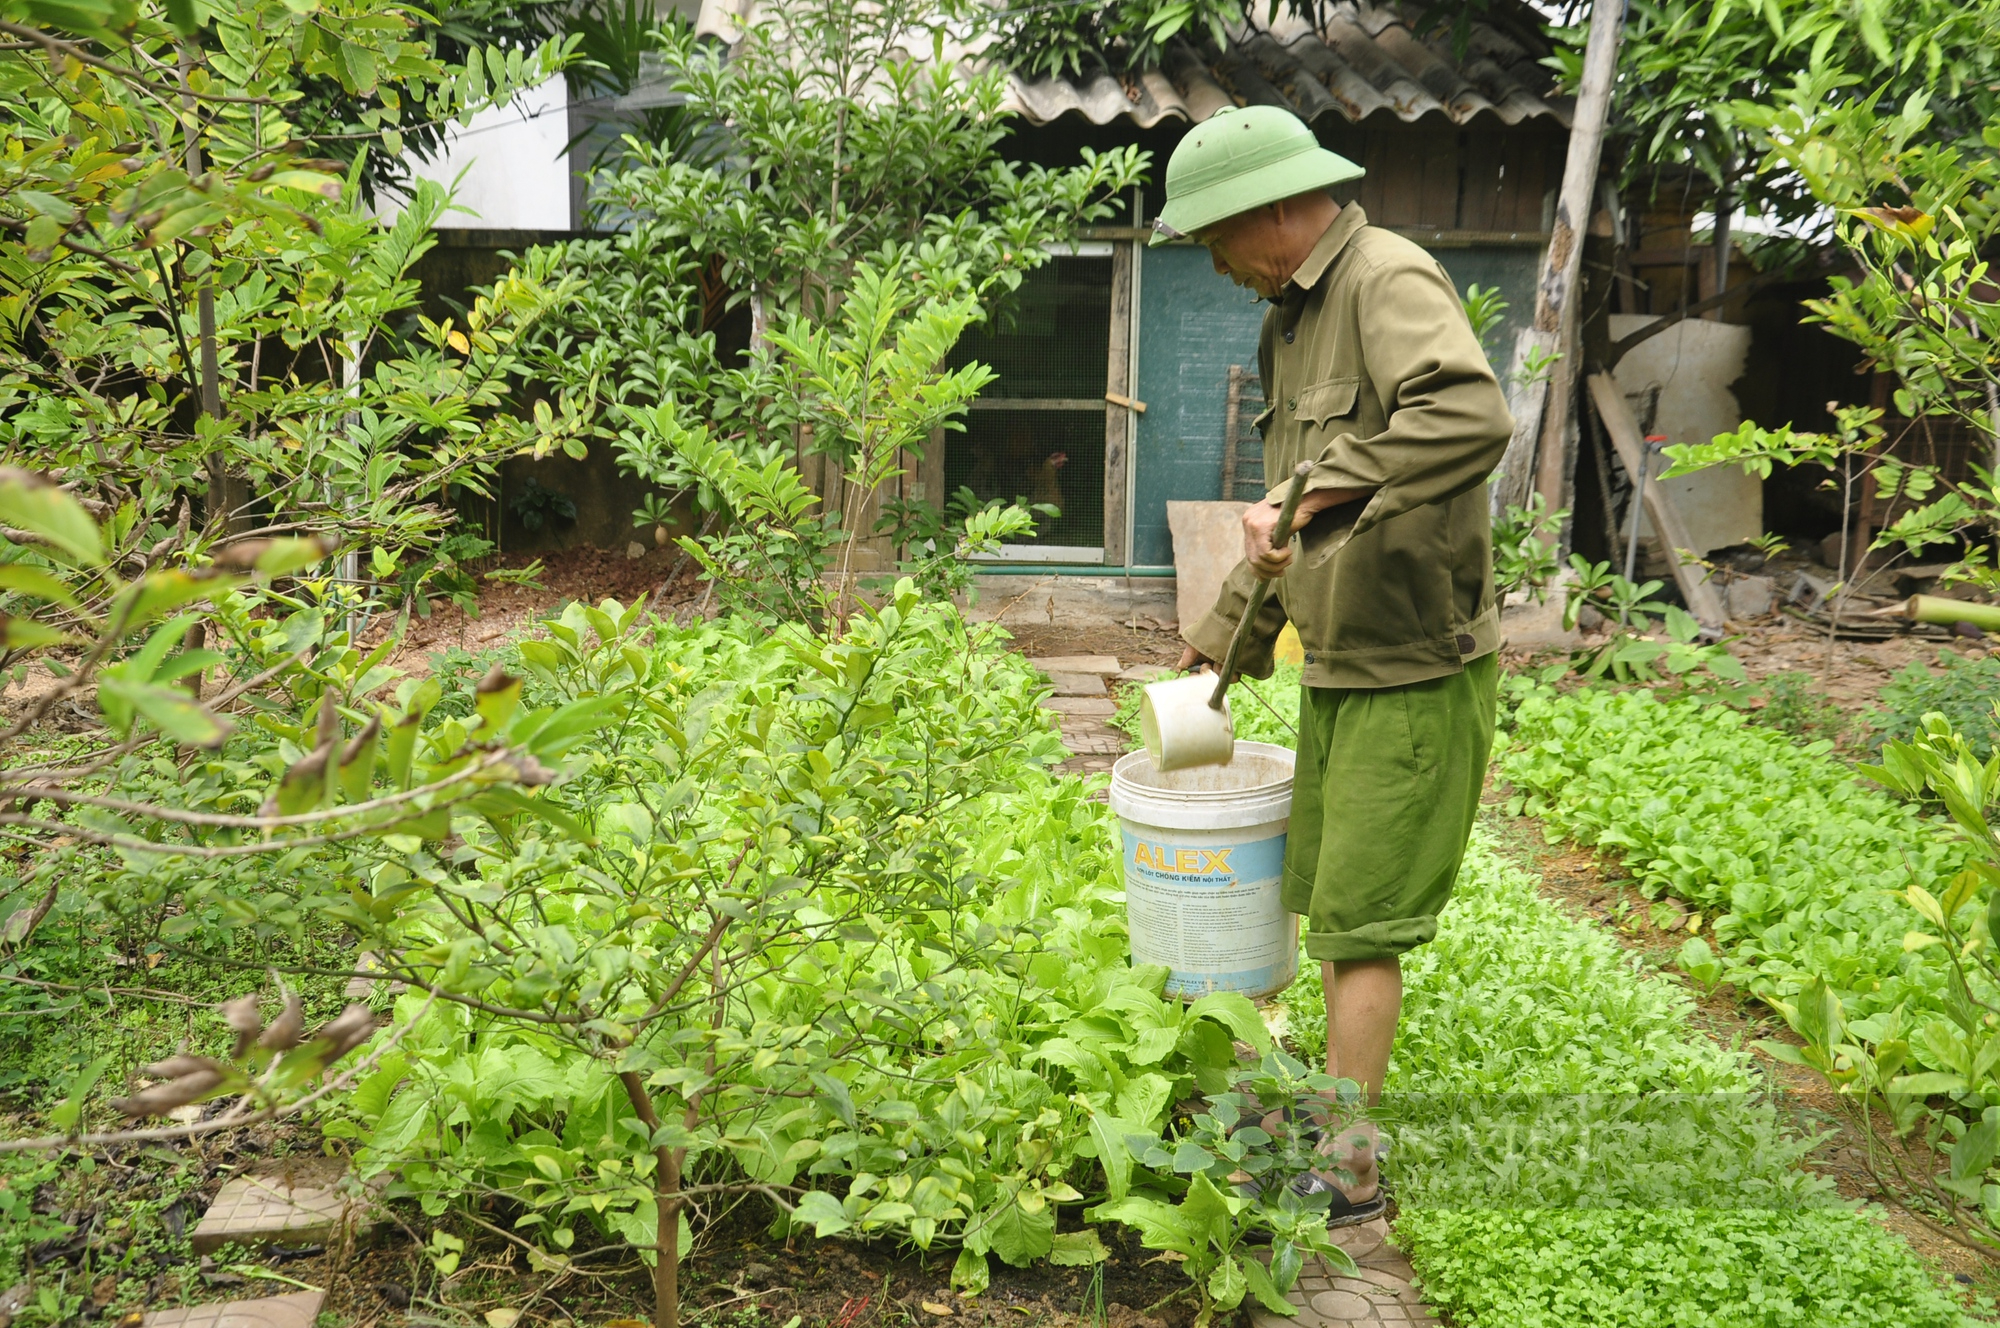 Quảng Ninh: Biến rác thải thành phân hữu cơ, nông dân bớt công chăm bón vẫn có rau sạch ăn mỗi ngày - Ảnh 1.